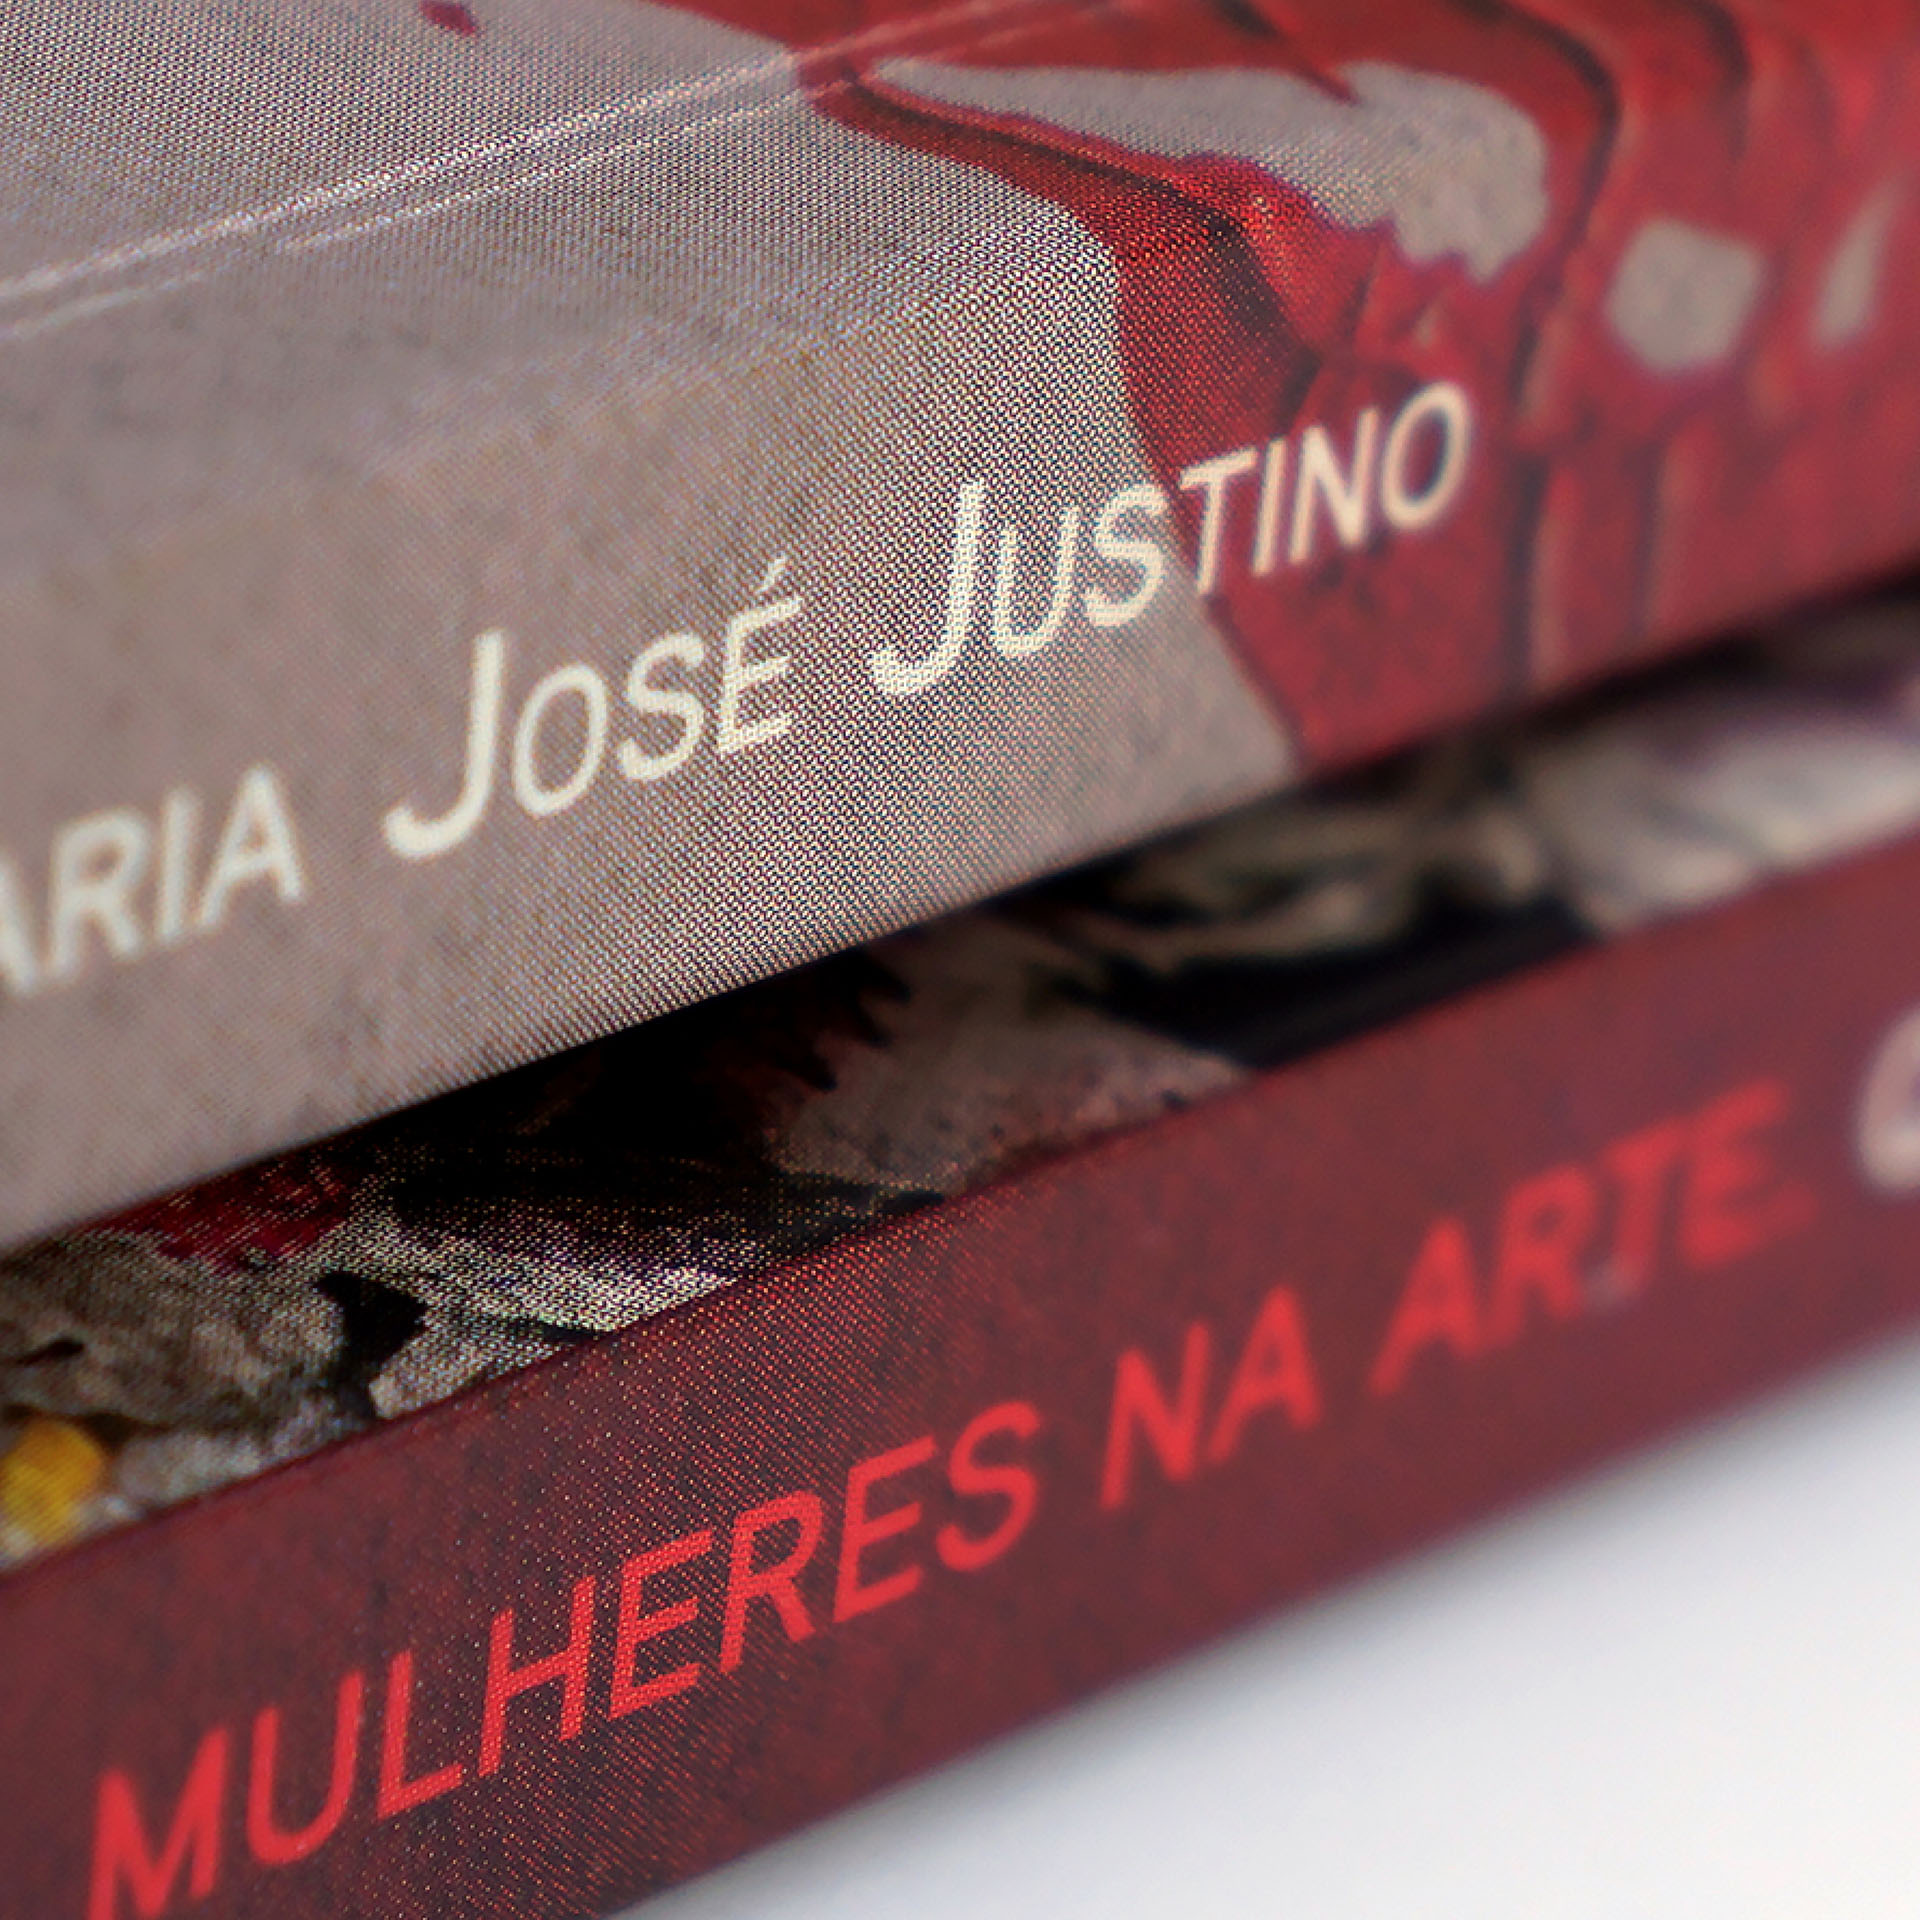 Maria Jose Livros Mulheres na Arte